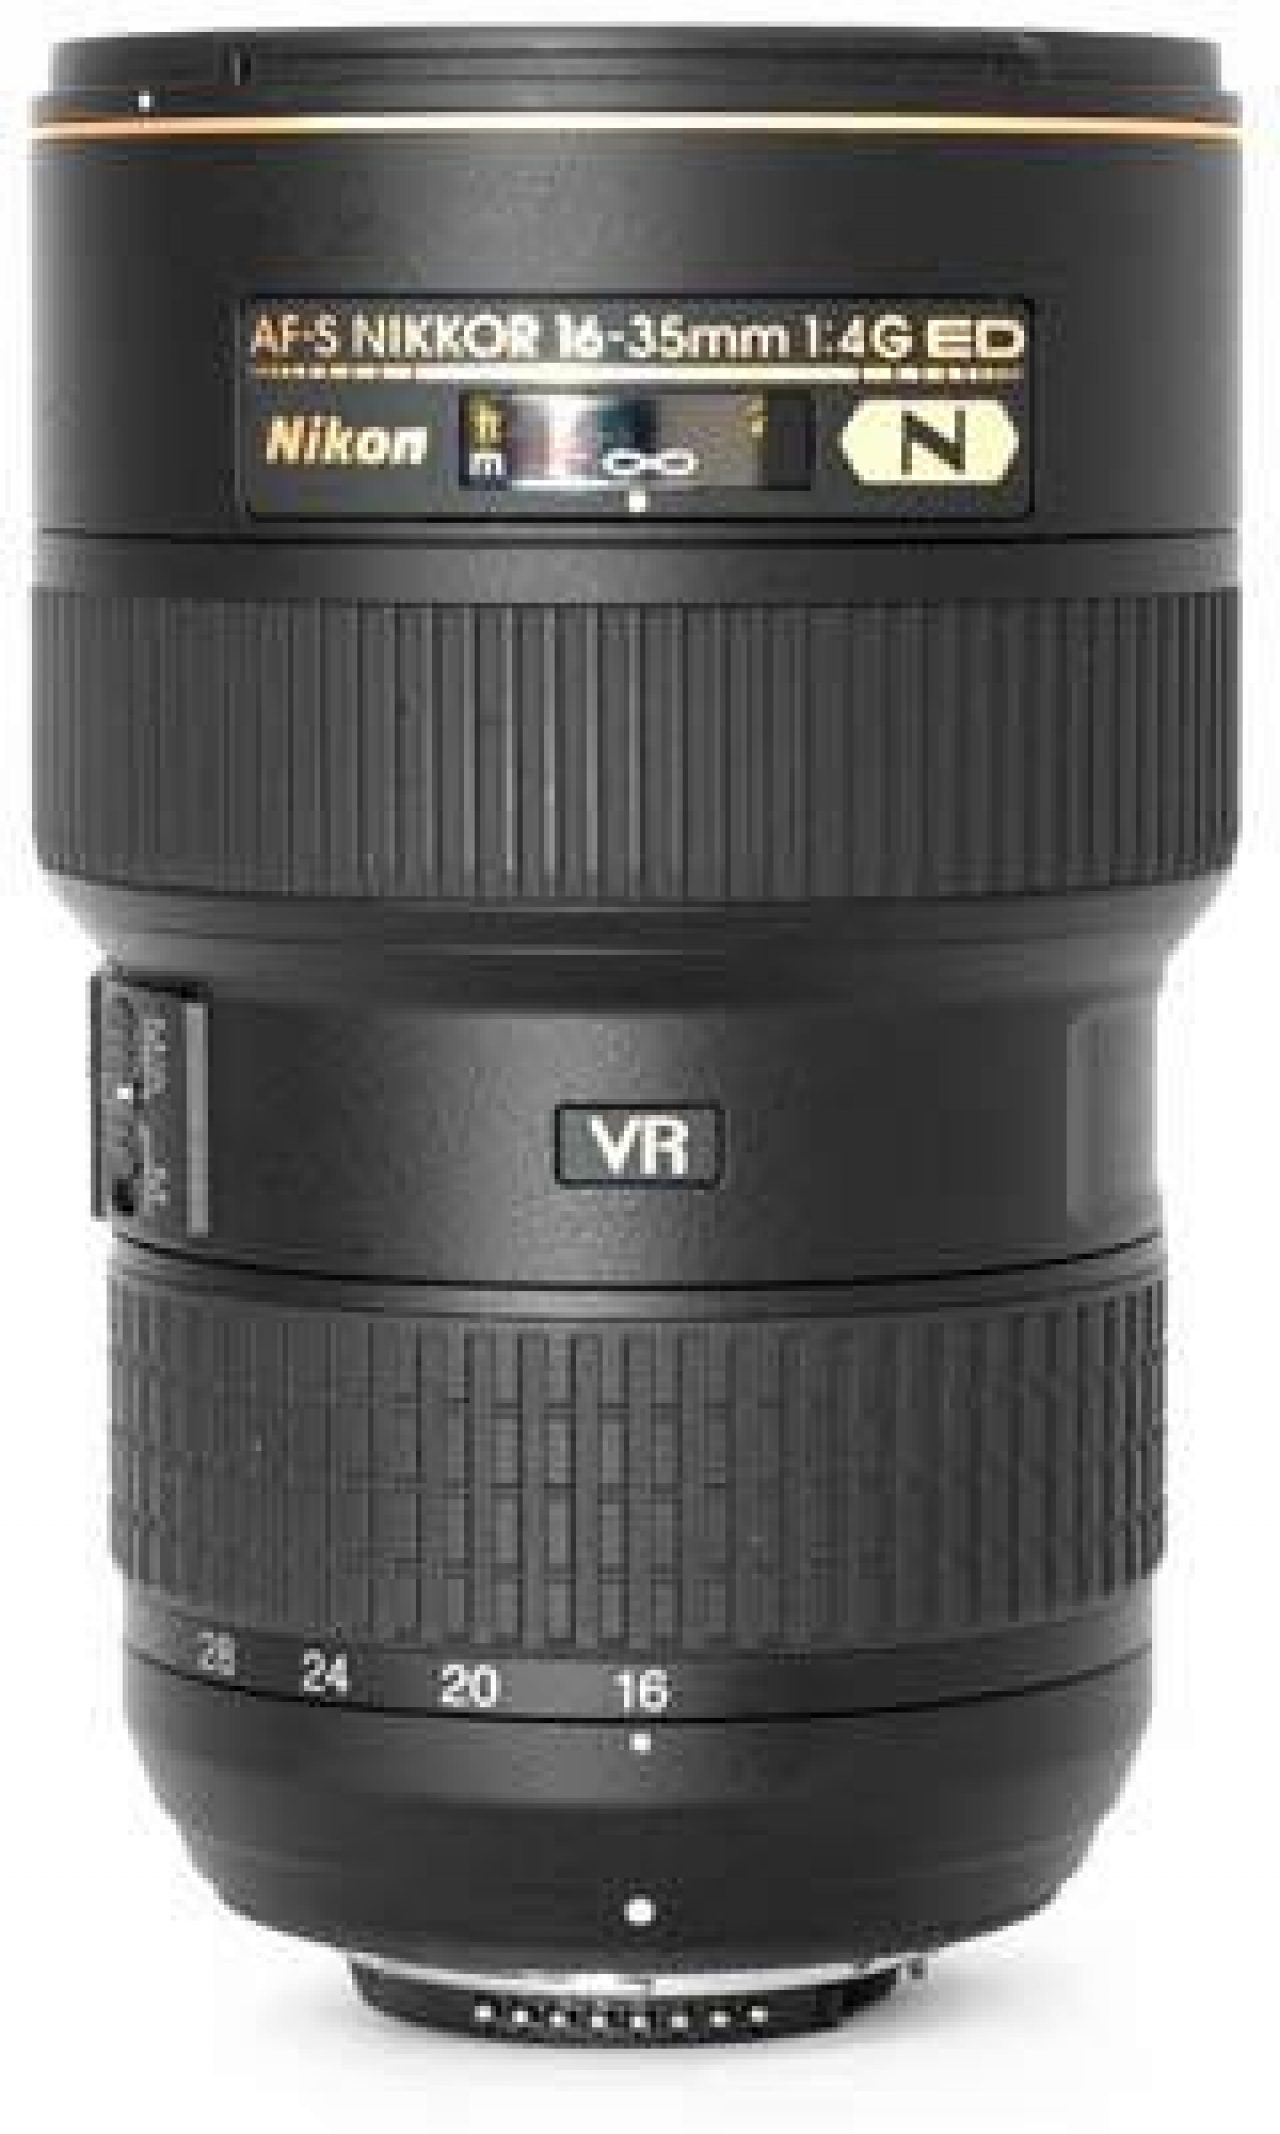 Nikon AF-S Nikkor 16-35mm f/4G ED VR Review | Photography Blog